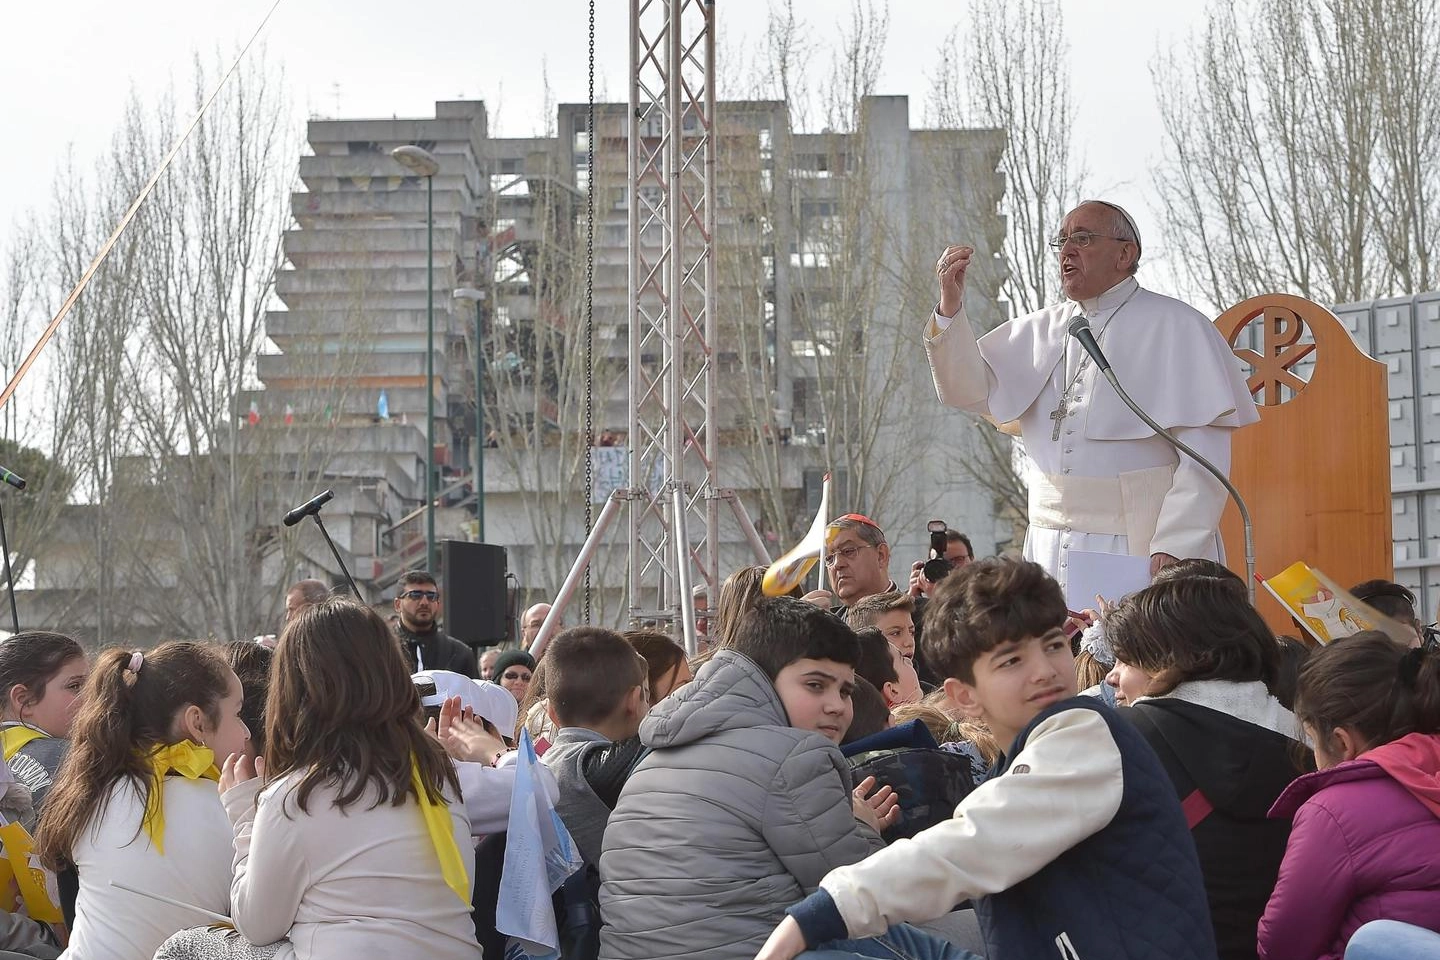 L'incontro di papa Francesco con gli abitanti di Scampia nel 2015